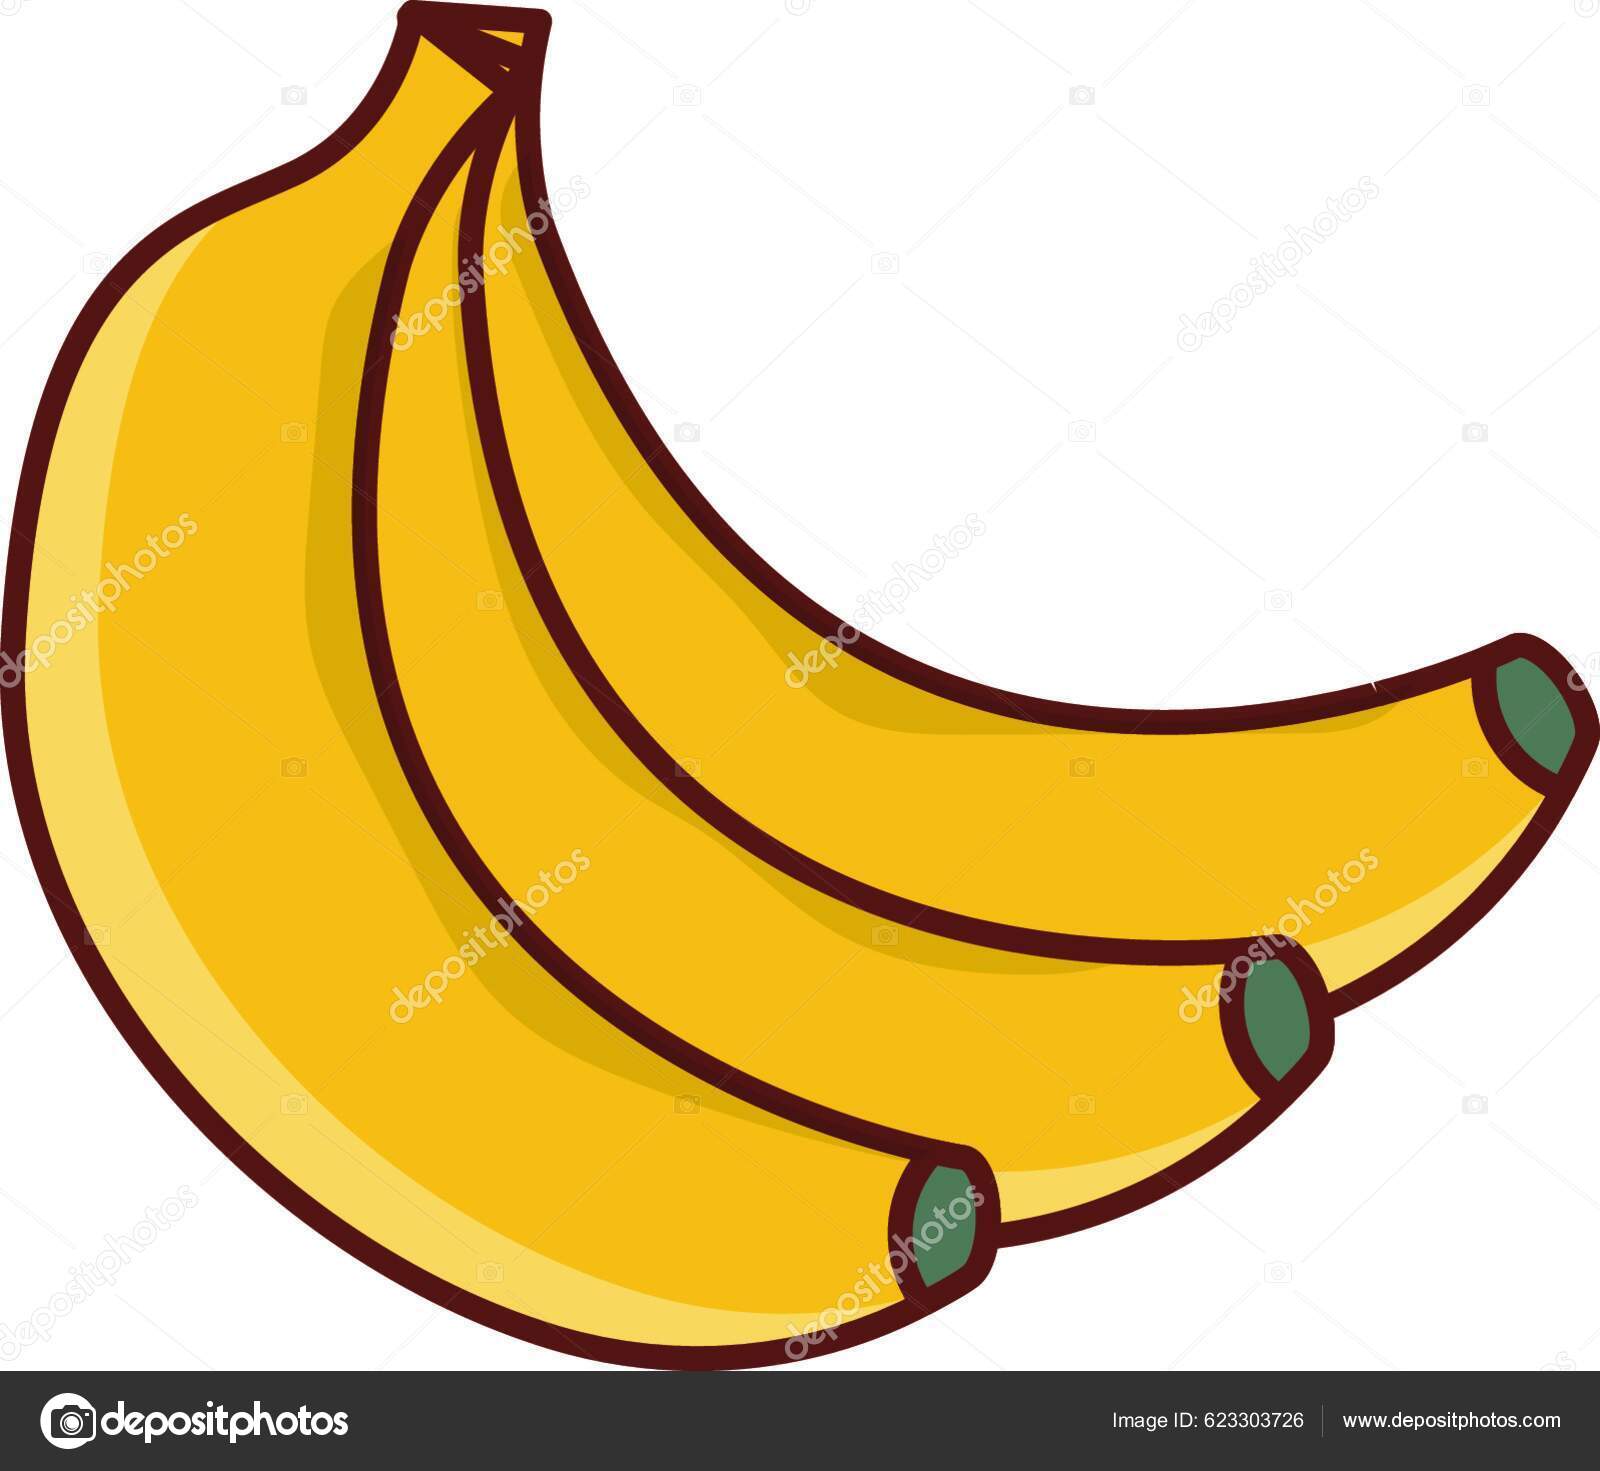 Ripe organic bananas stock photo · Graphic Yard